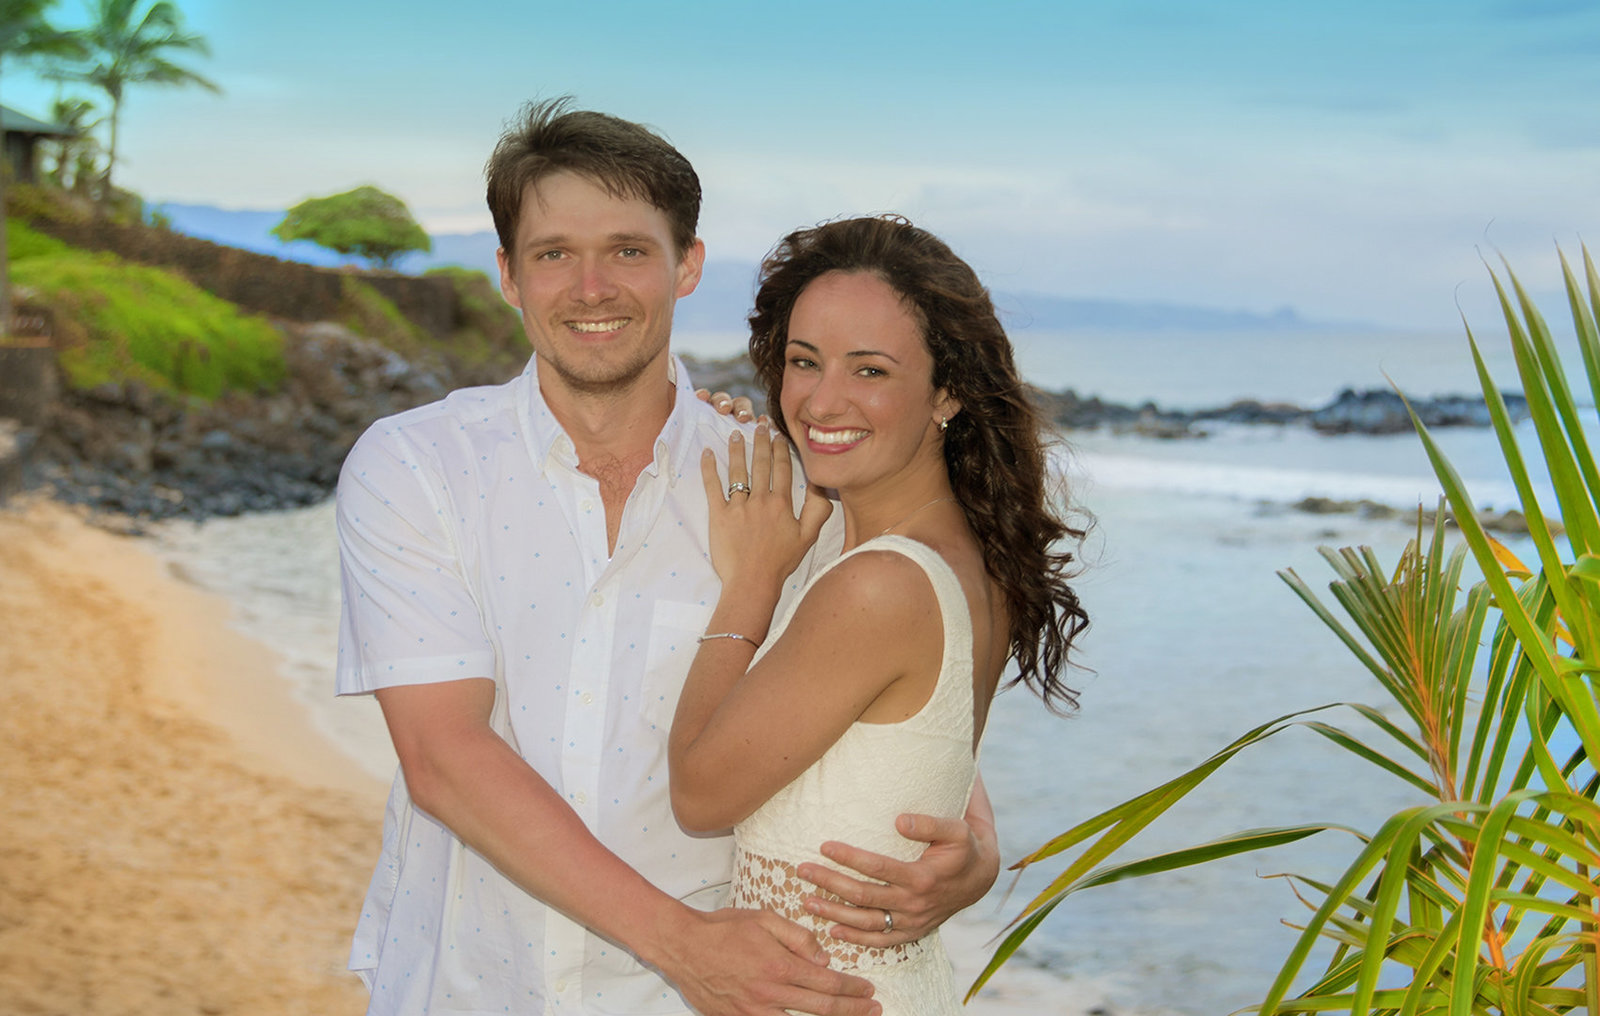 Hawaii wedding photographers